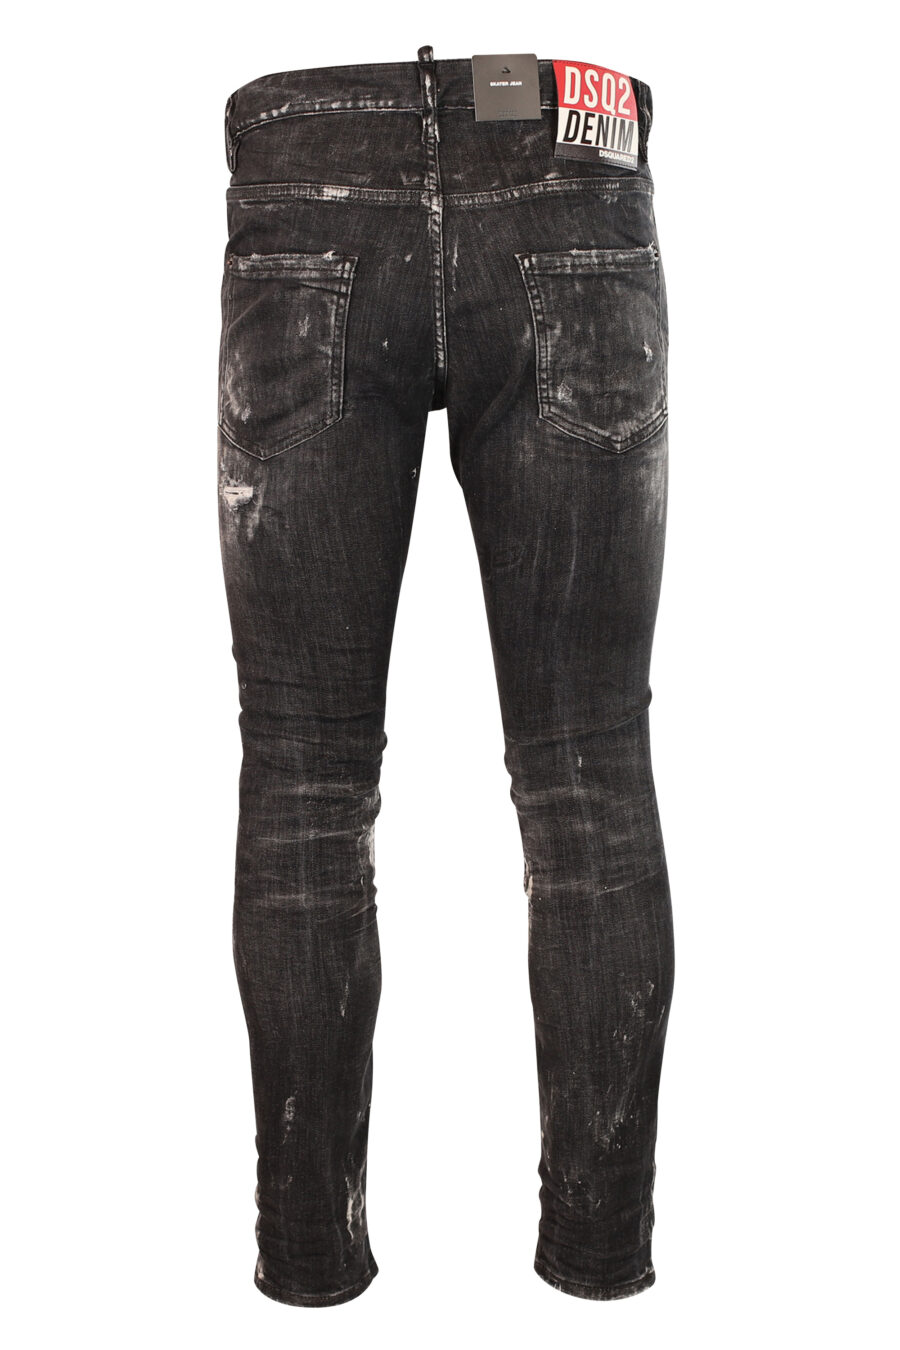 Skater-Jeans-Hose schwarz abgenutzt mit Rissen - 8052134938102 3